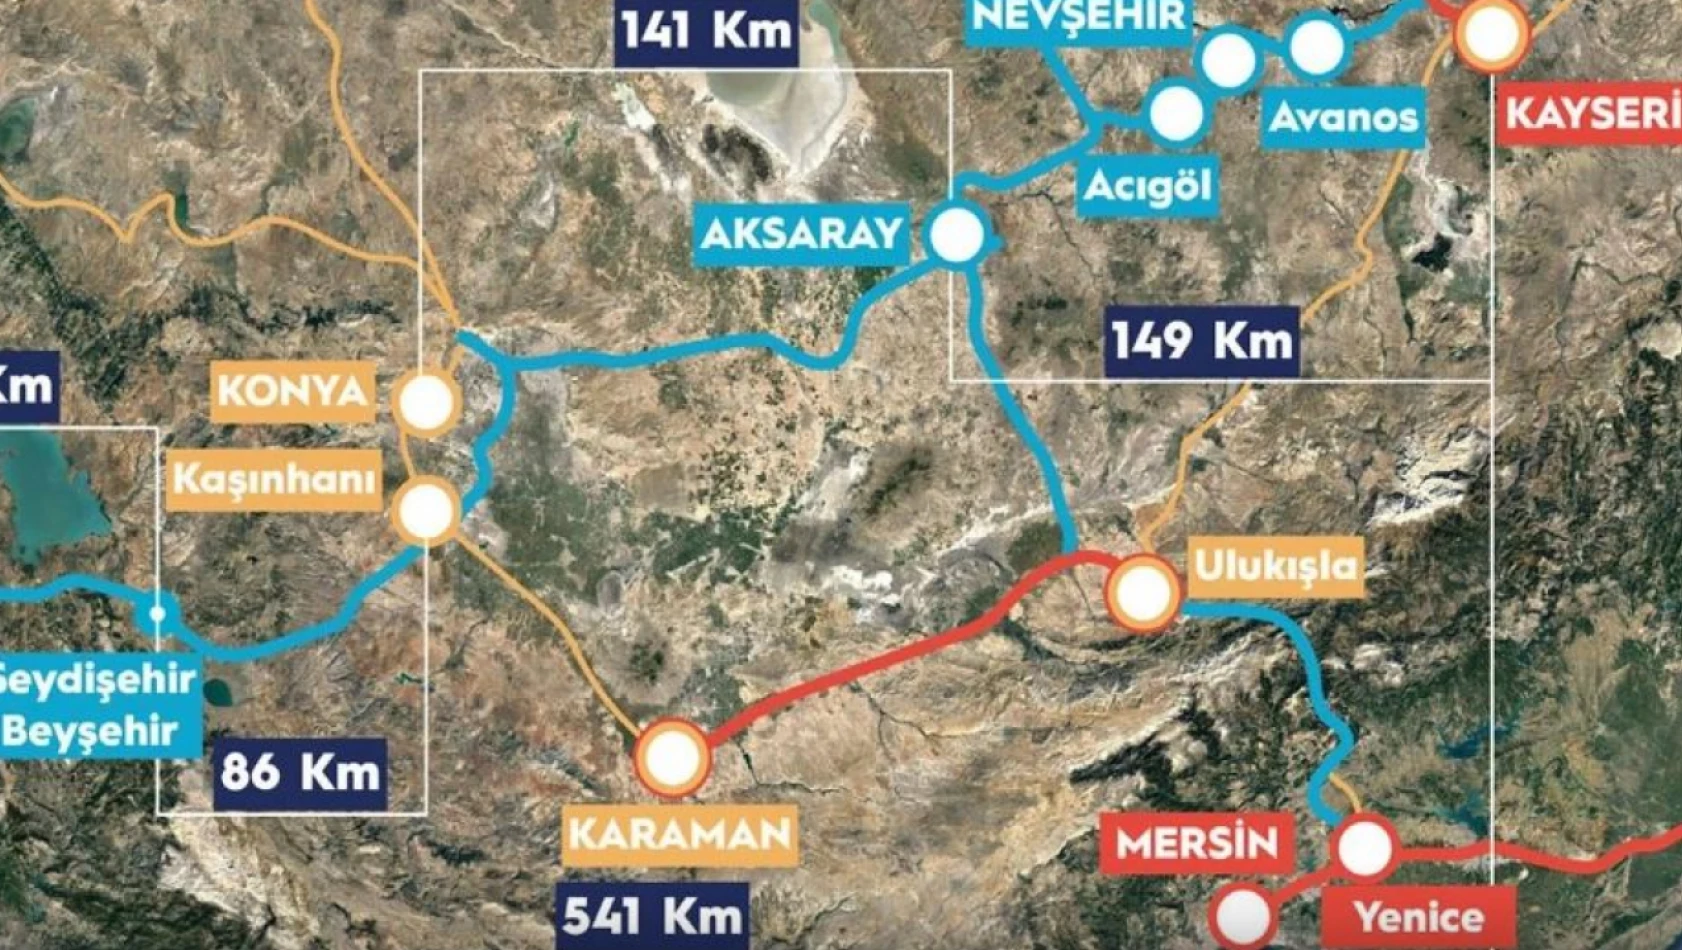 Kayseri-Antalya hızlı tren projesinin tarihi belli oldu - Ne zaman bitecek?